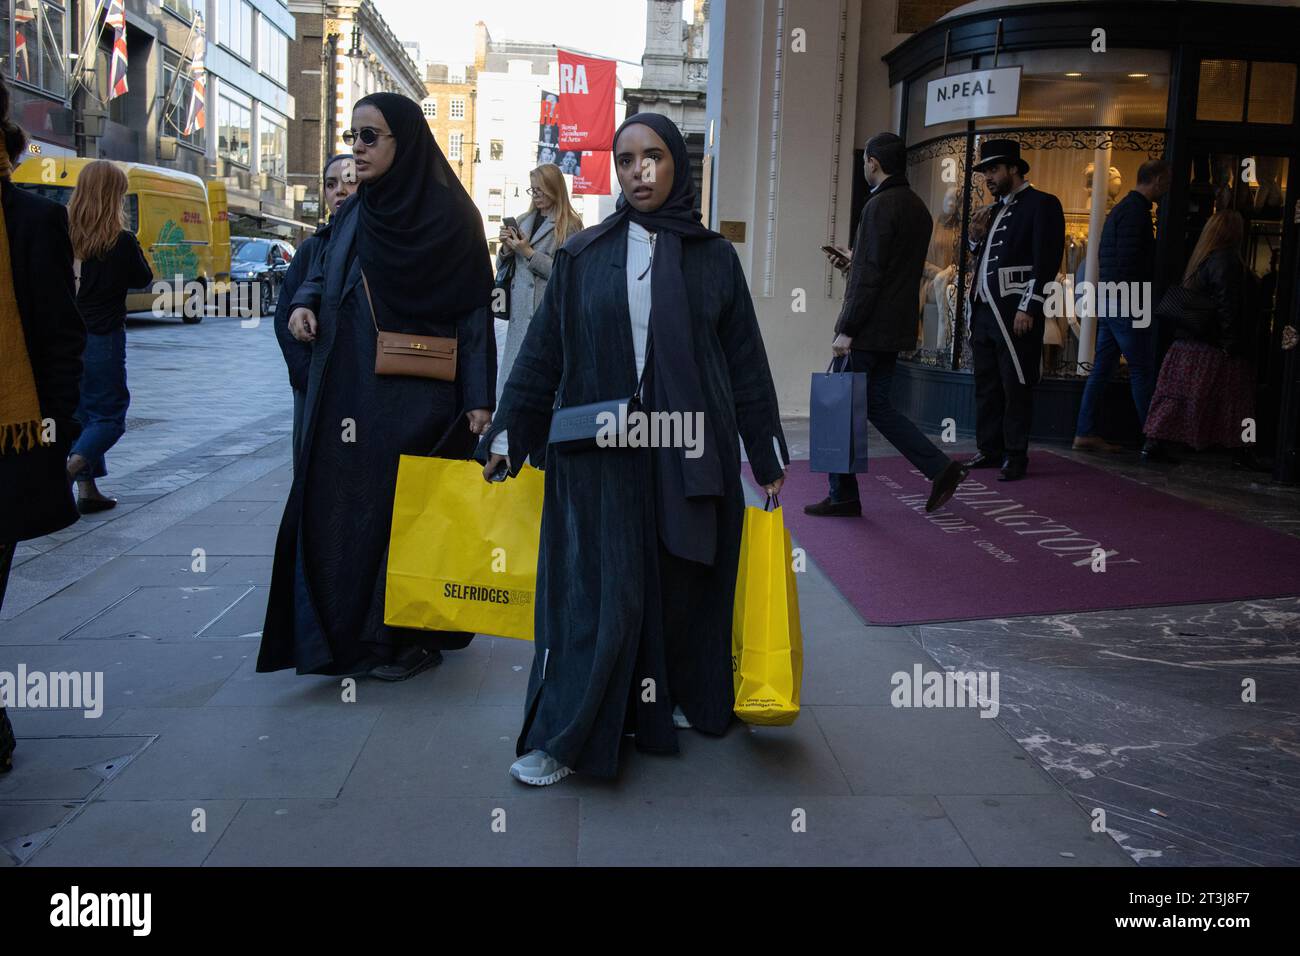 Donna del Medio Oriente che indossa abayas nere per fare shopping a Burlington Arcade, i marchi di lusso di Mayfair High Street, Londra, Inghilterra, Regno Unito Foto Stock